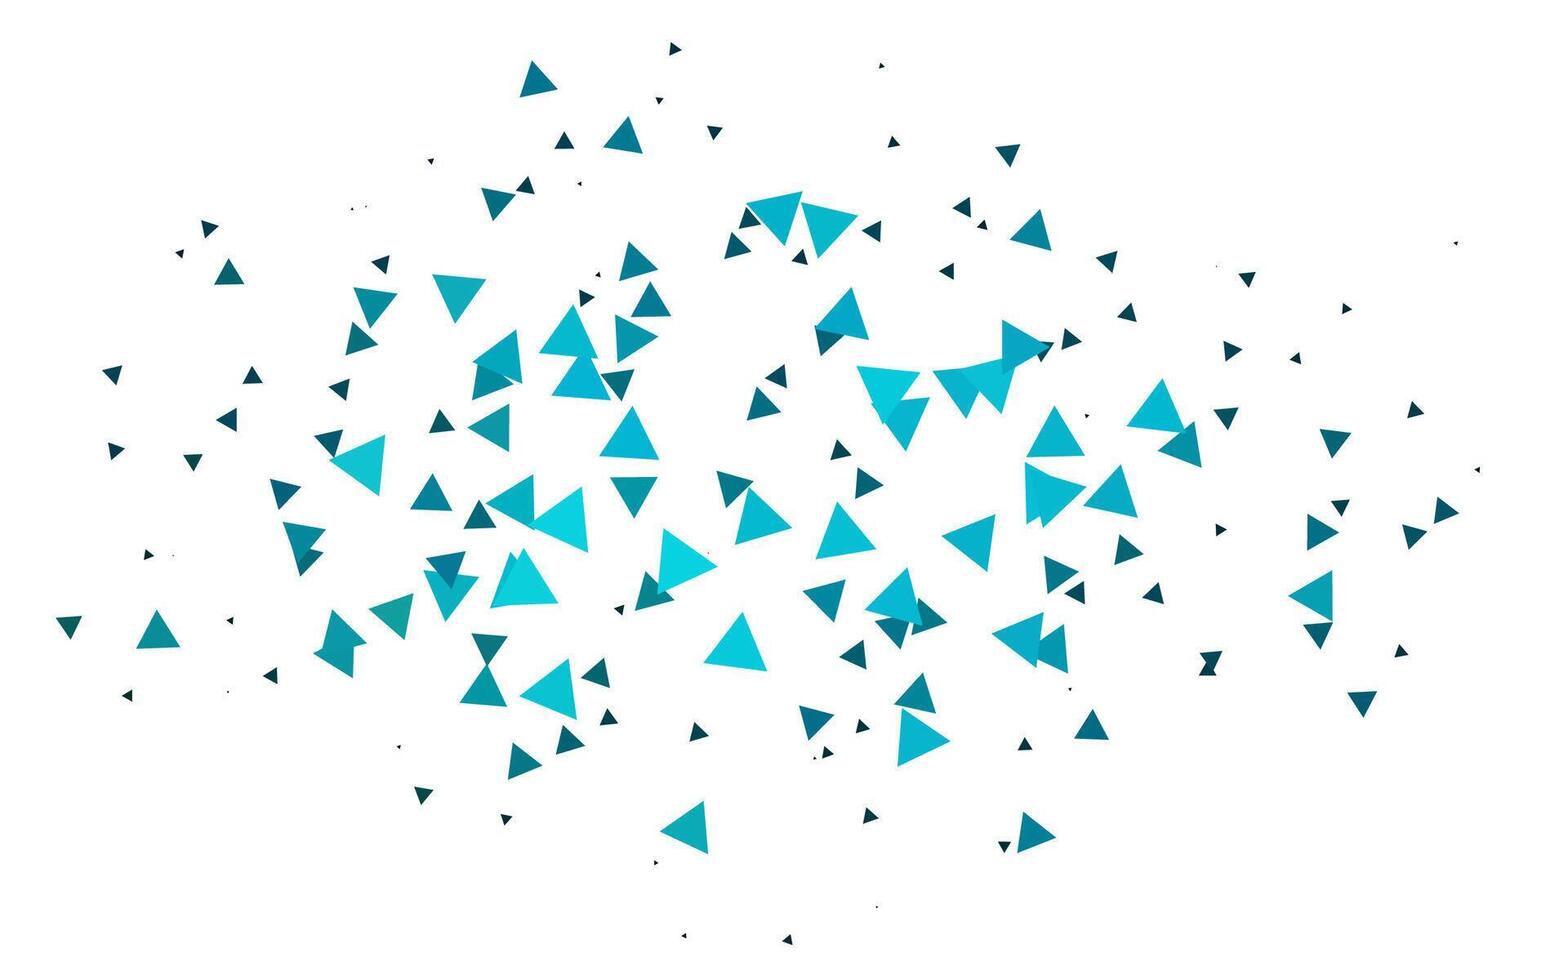 ljusblå vektorlayout med linjer, trianglar. vektor